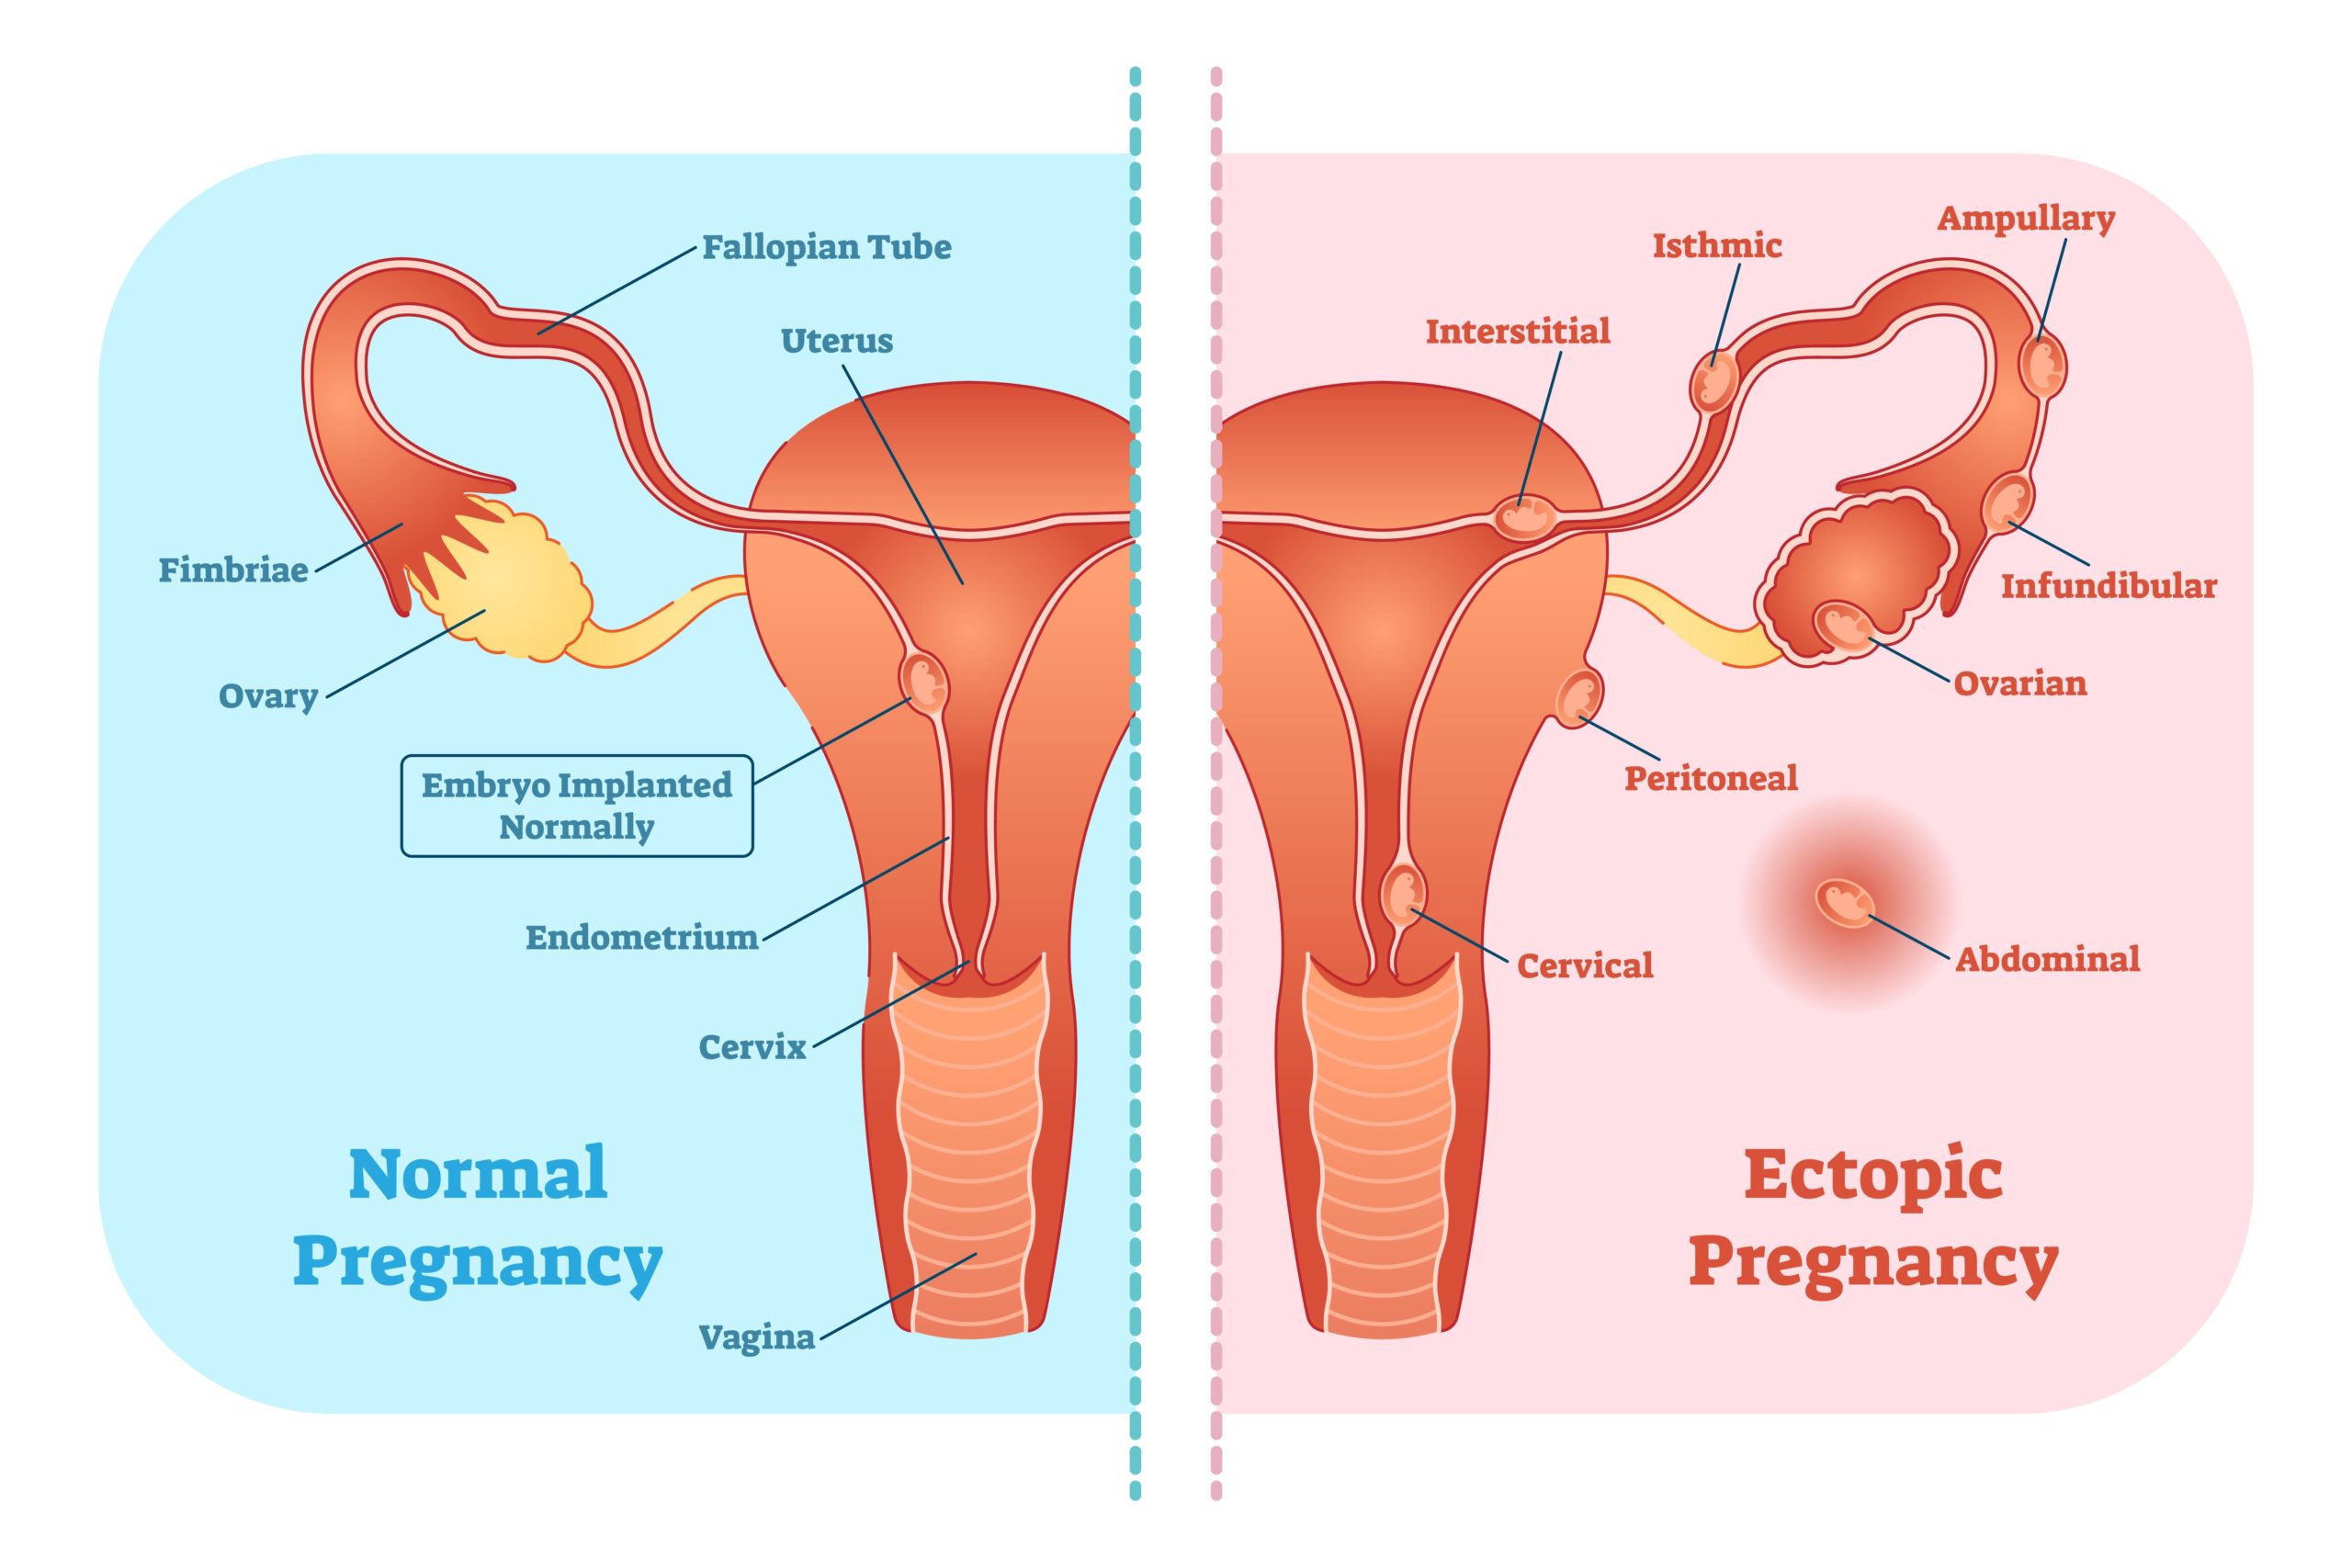 تعريف الحمل خارج الرحم Ectopic Pregnancy